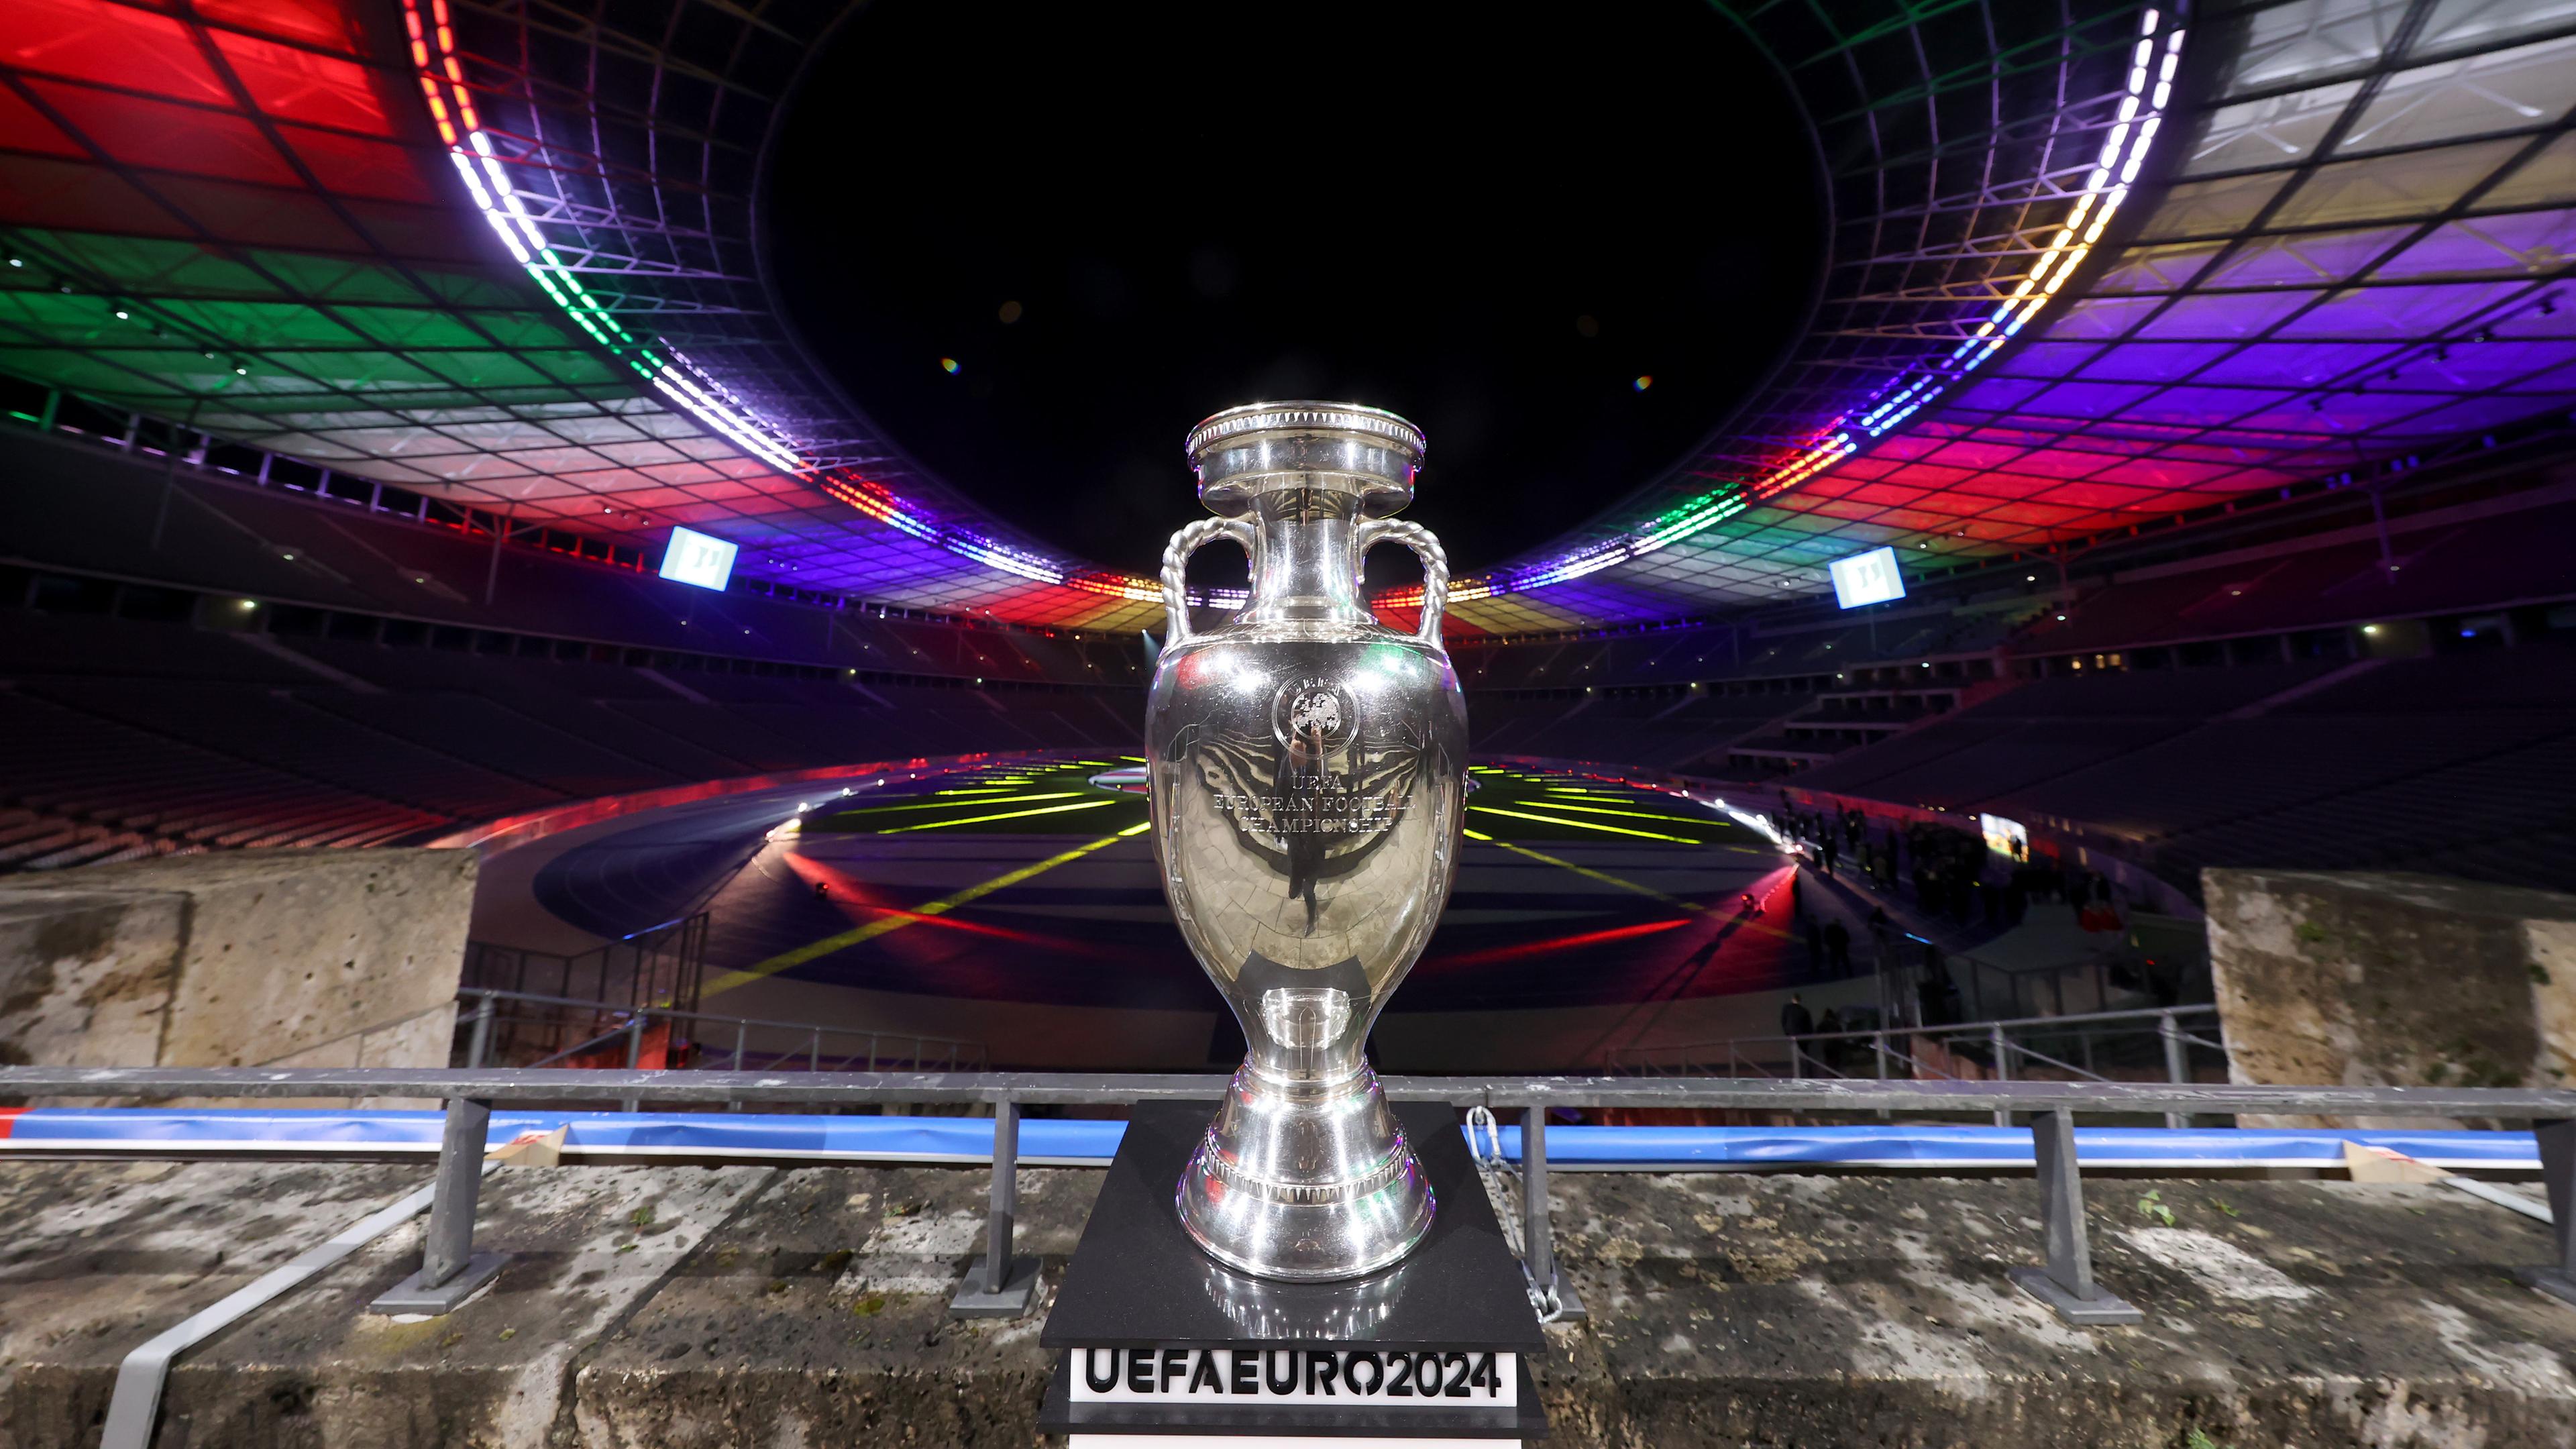 Das Bild zeigt einen EM-Pokal im Berliner Olympiastadion.